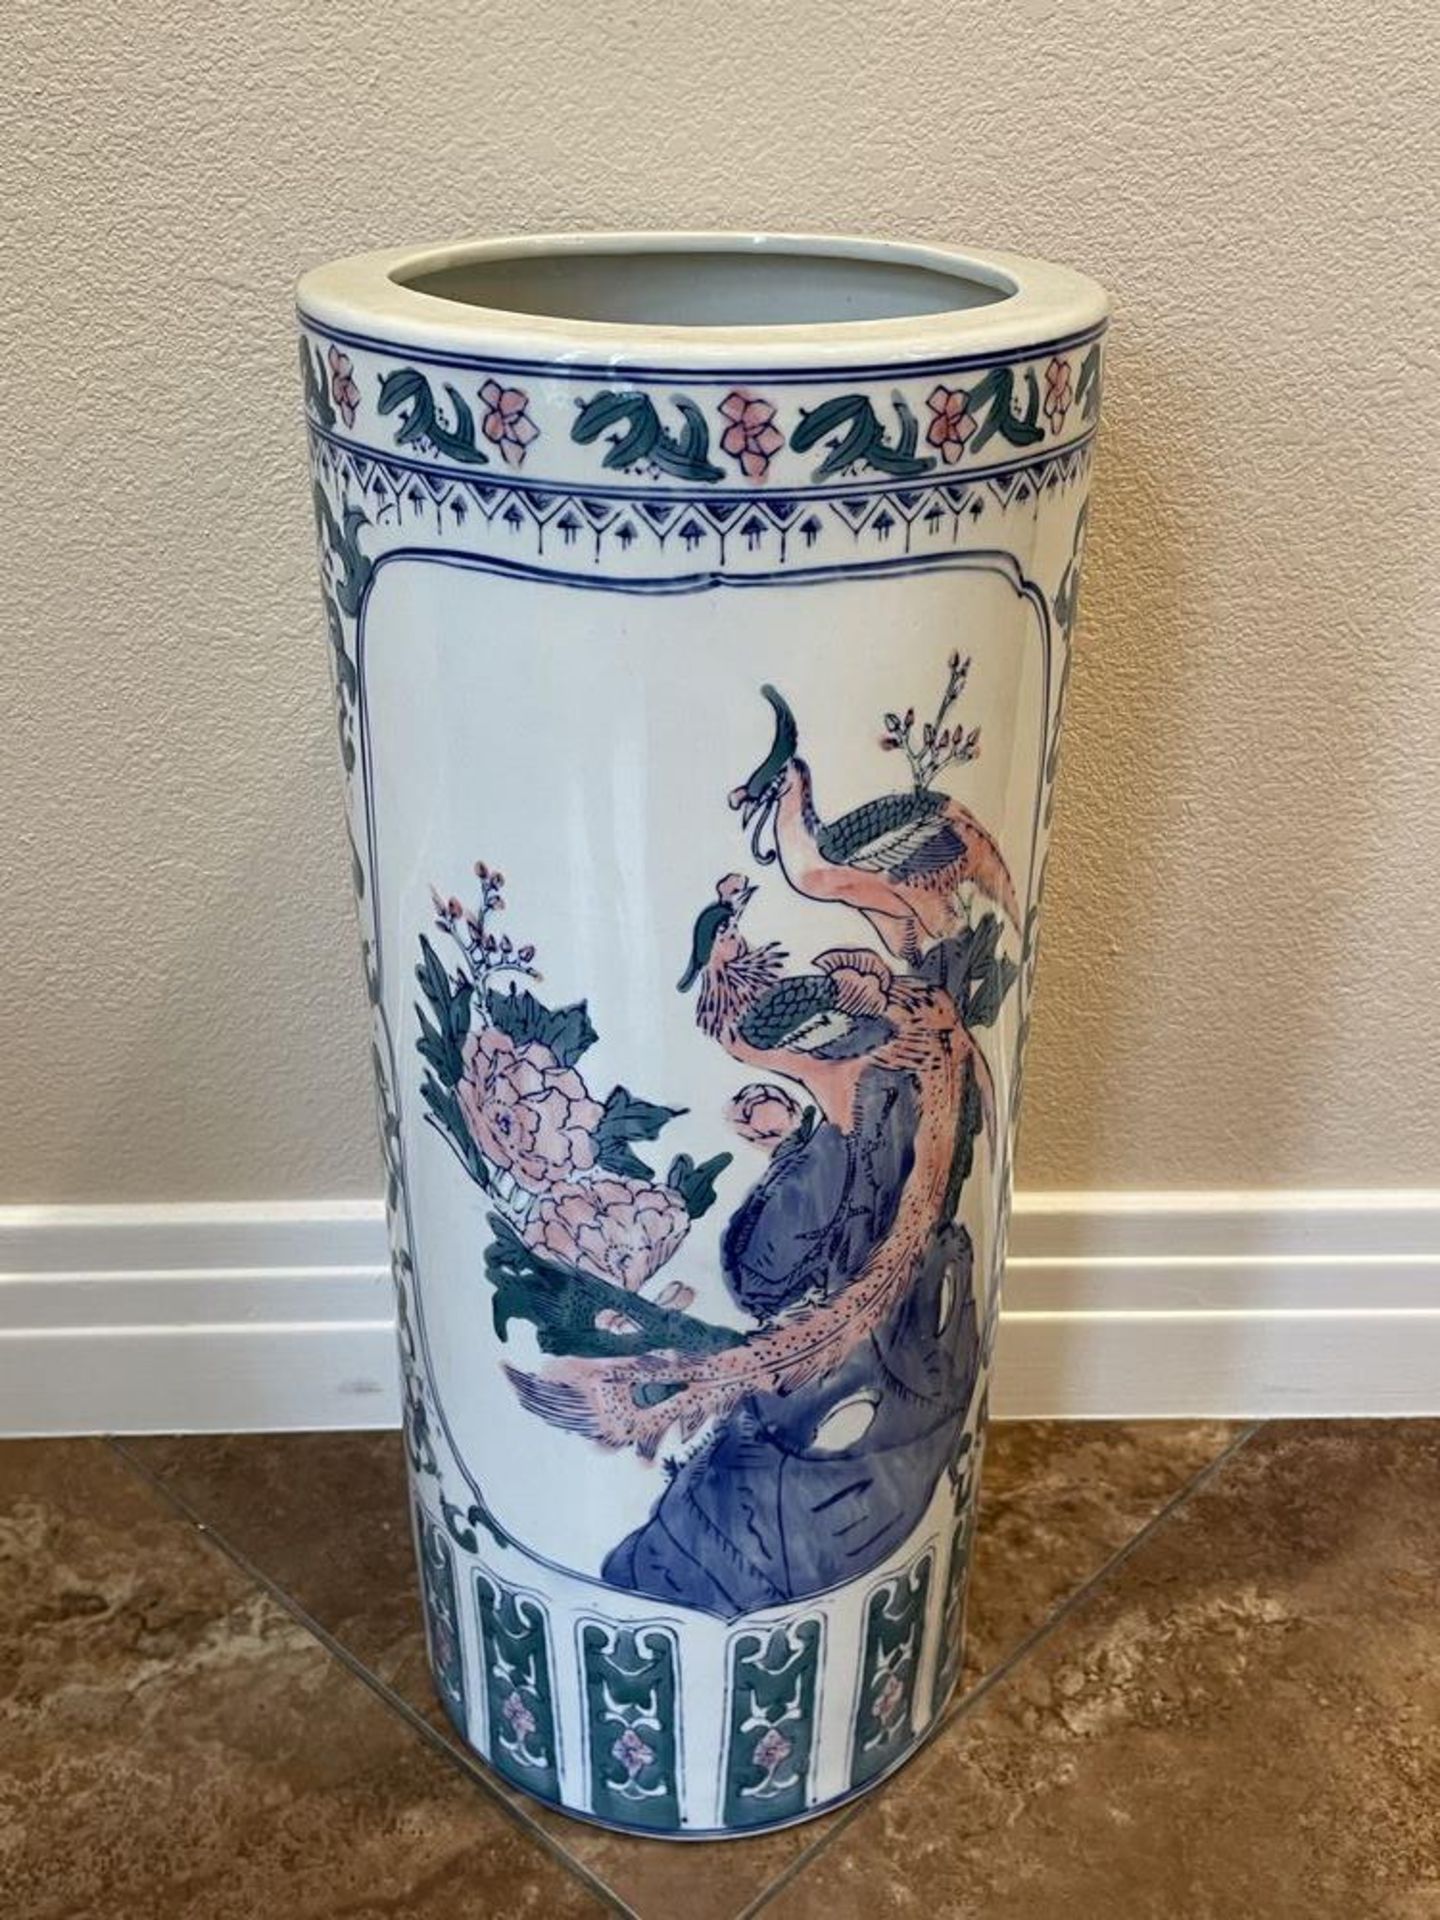 Large East Asian Porceline Planter/Vase/Pot with bird design - 21" x 9" - Image 4 of 5